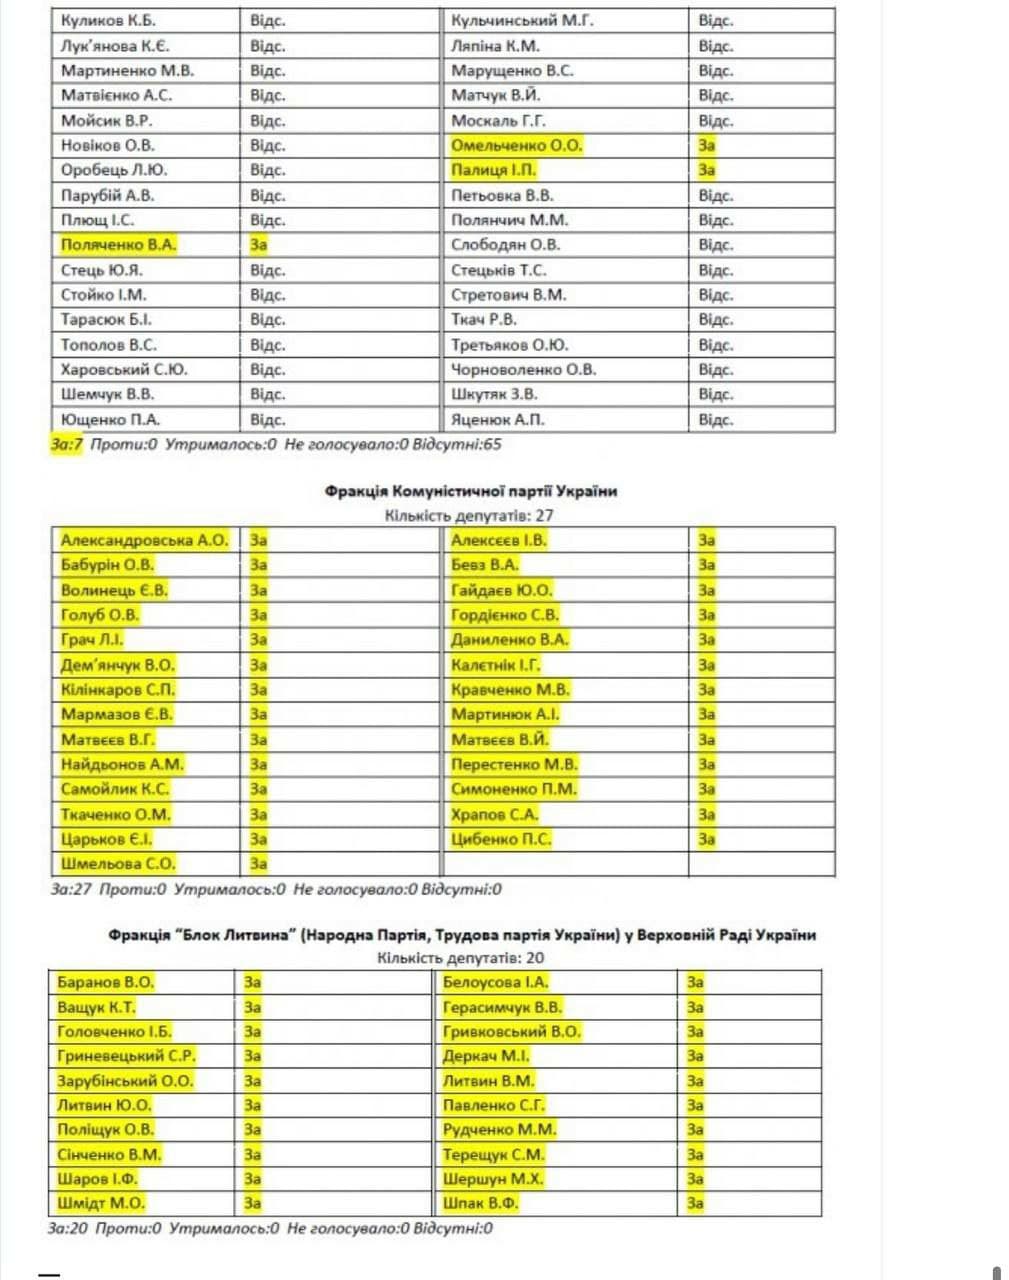 Опубликован список нардепов, которых СБУ проверит из-за Харьковских соглашений - 5 - изображение